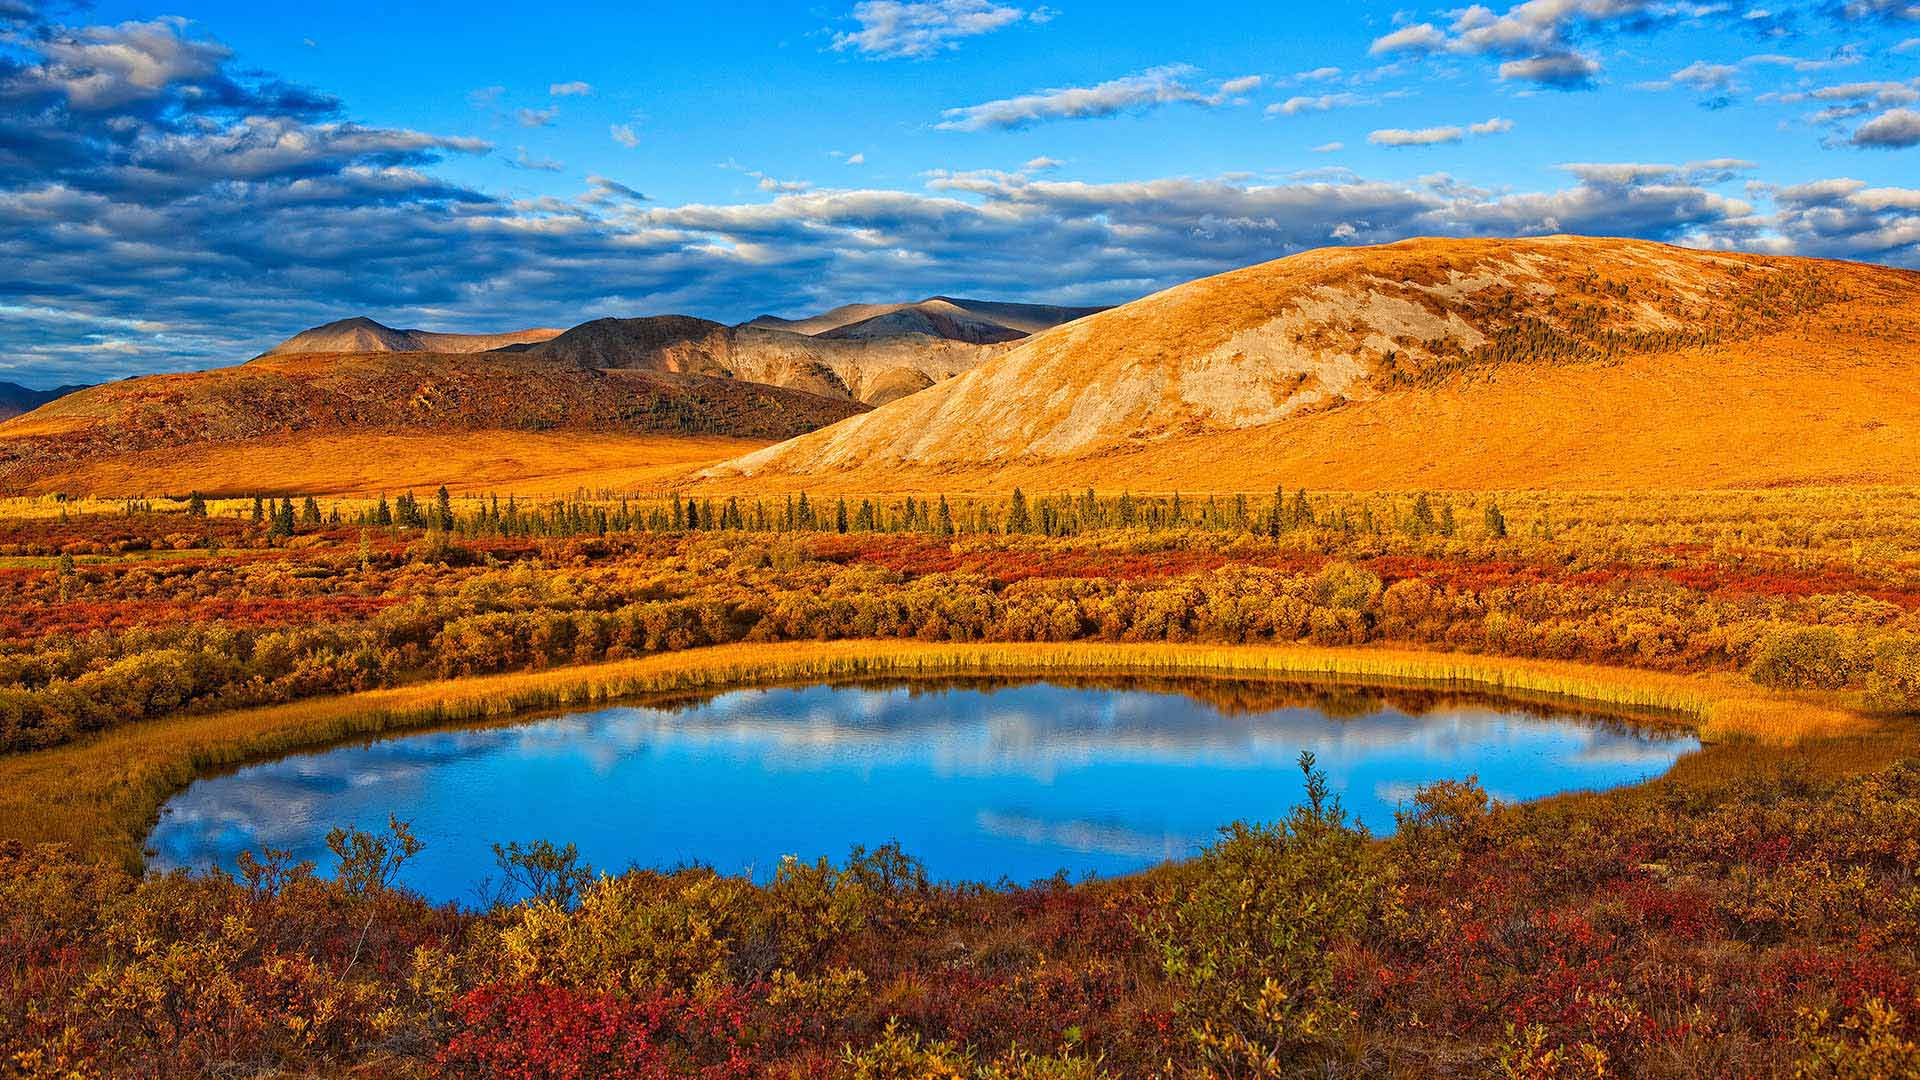 Autumn Yukon Bing Wallpaper Download